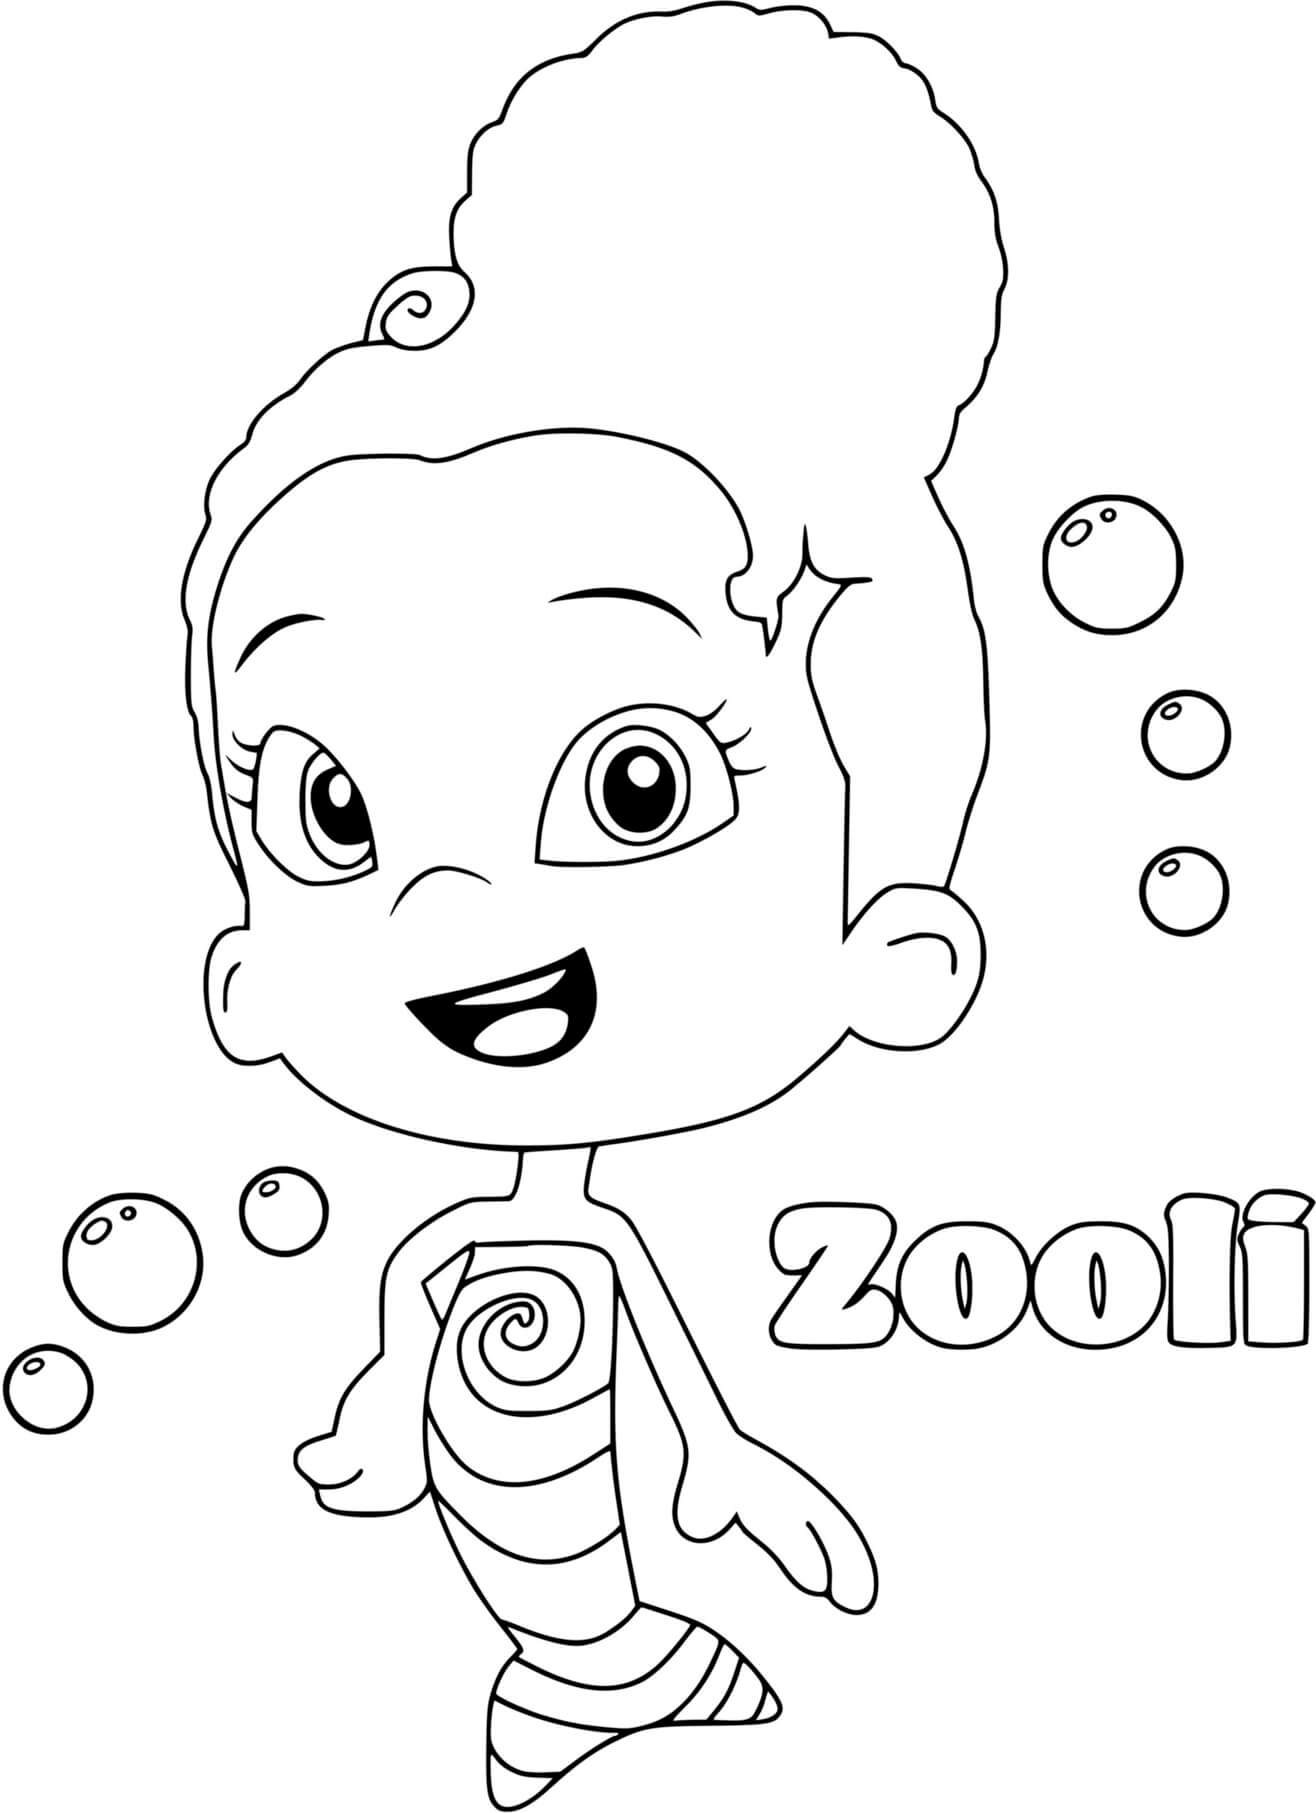 Zooli Bubble Guppies